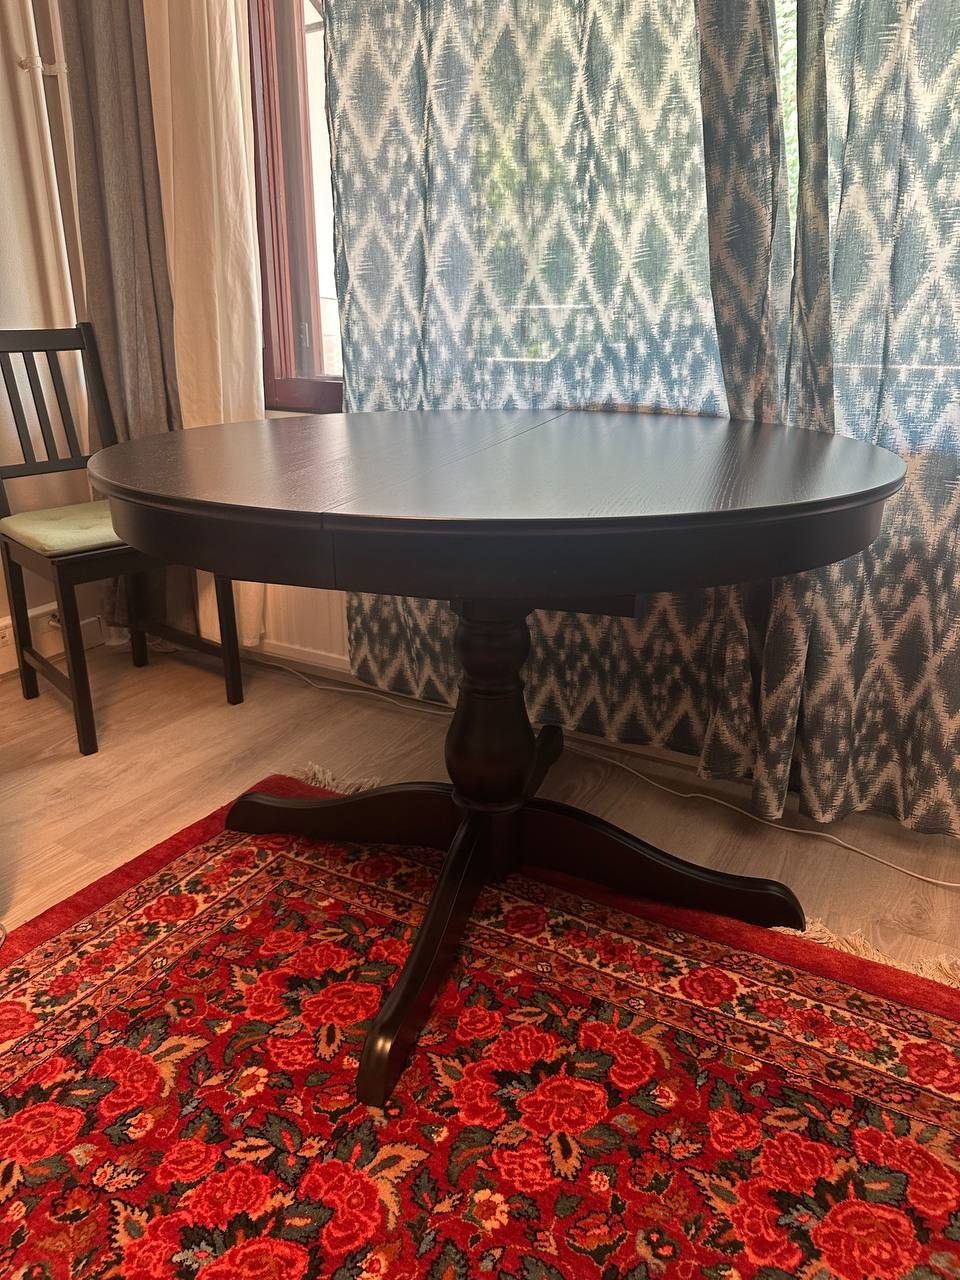 INGATORP Ruokapöytä, jatkettava, musta/ ikea Dining table, extendable, black